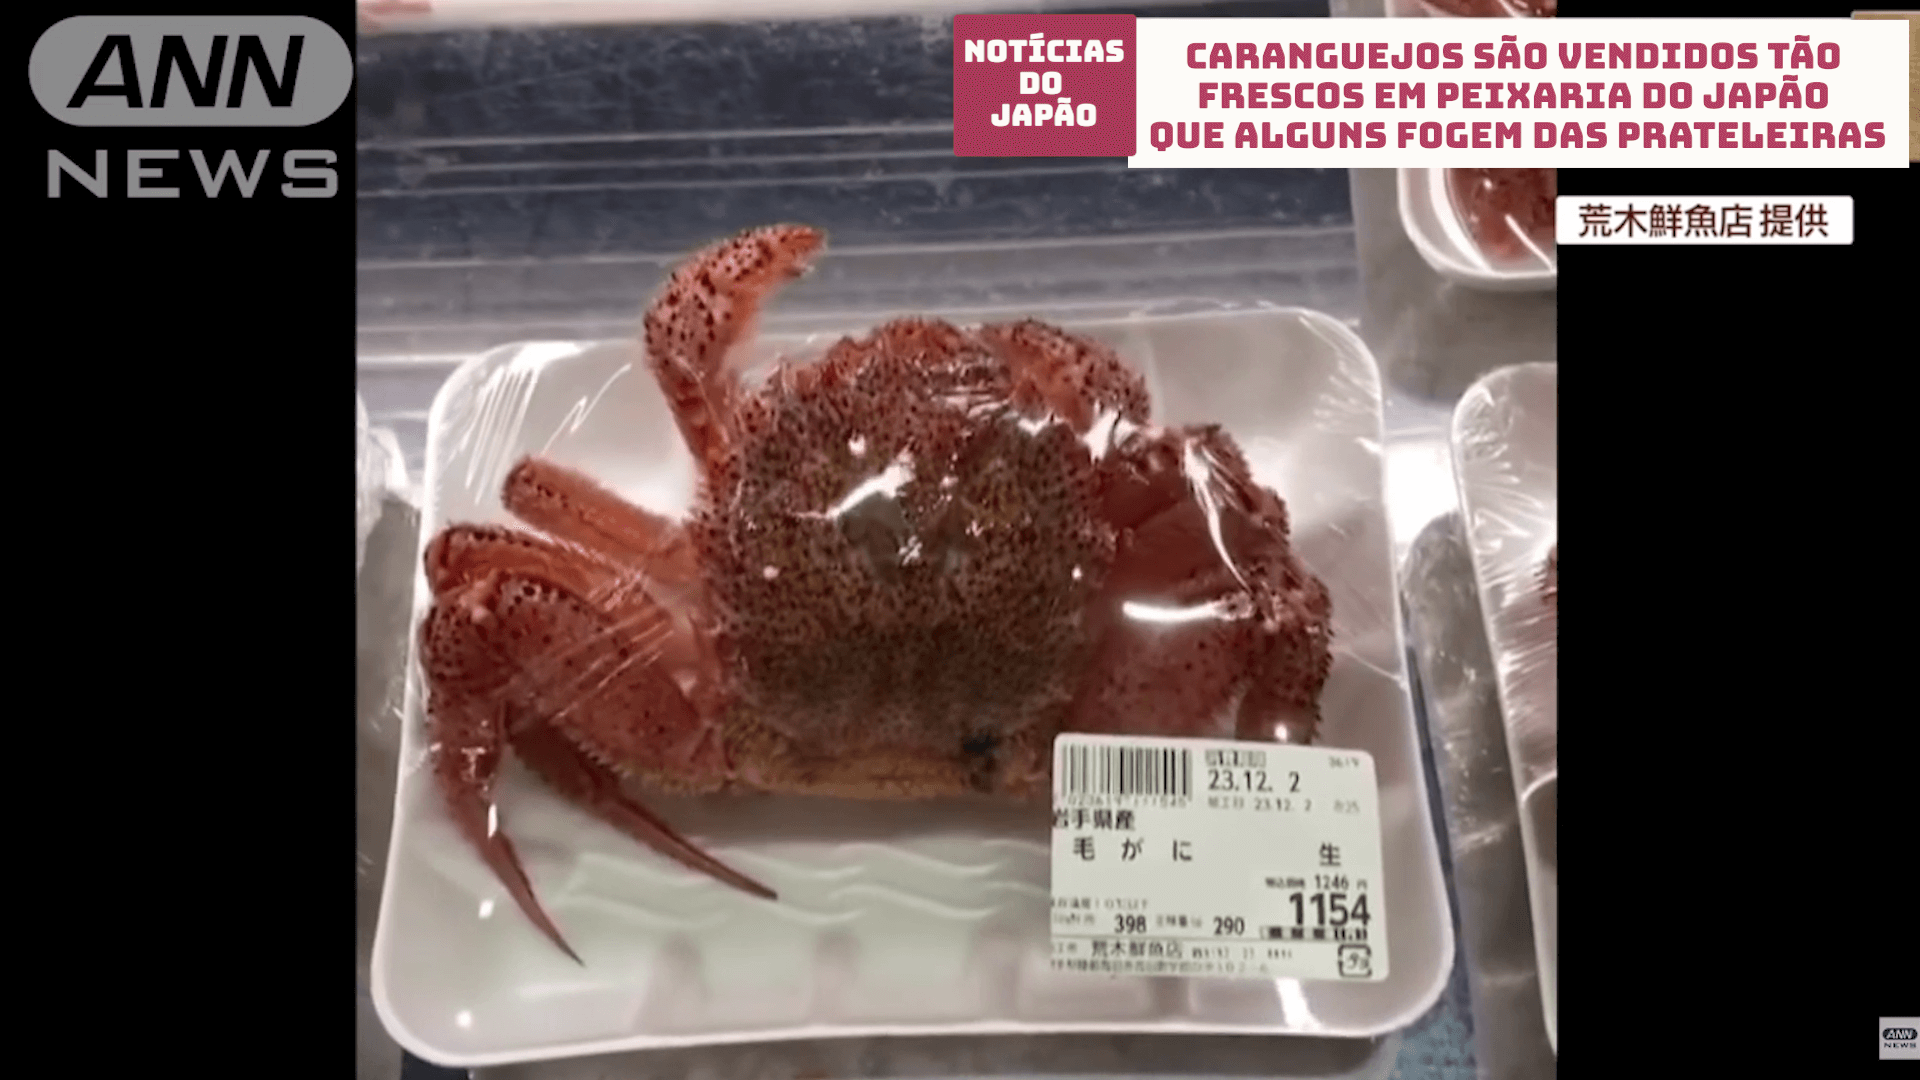 Caranguejo é vendido tão fresco em peixaria do Japão que alguns fogem das prateleiras 